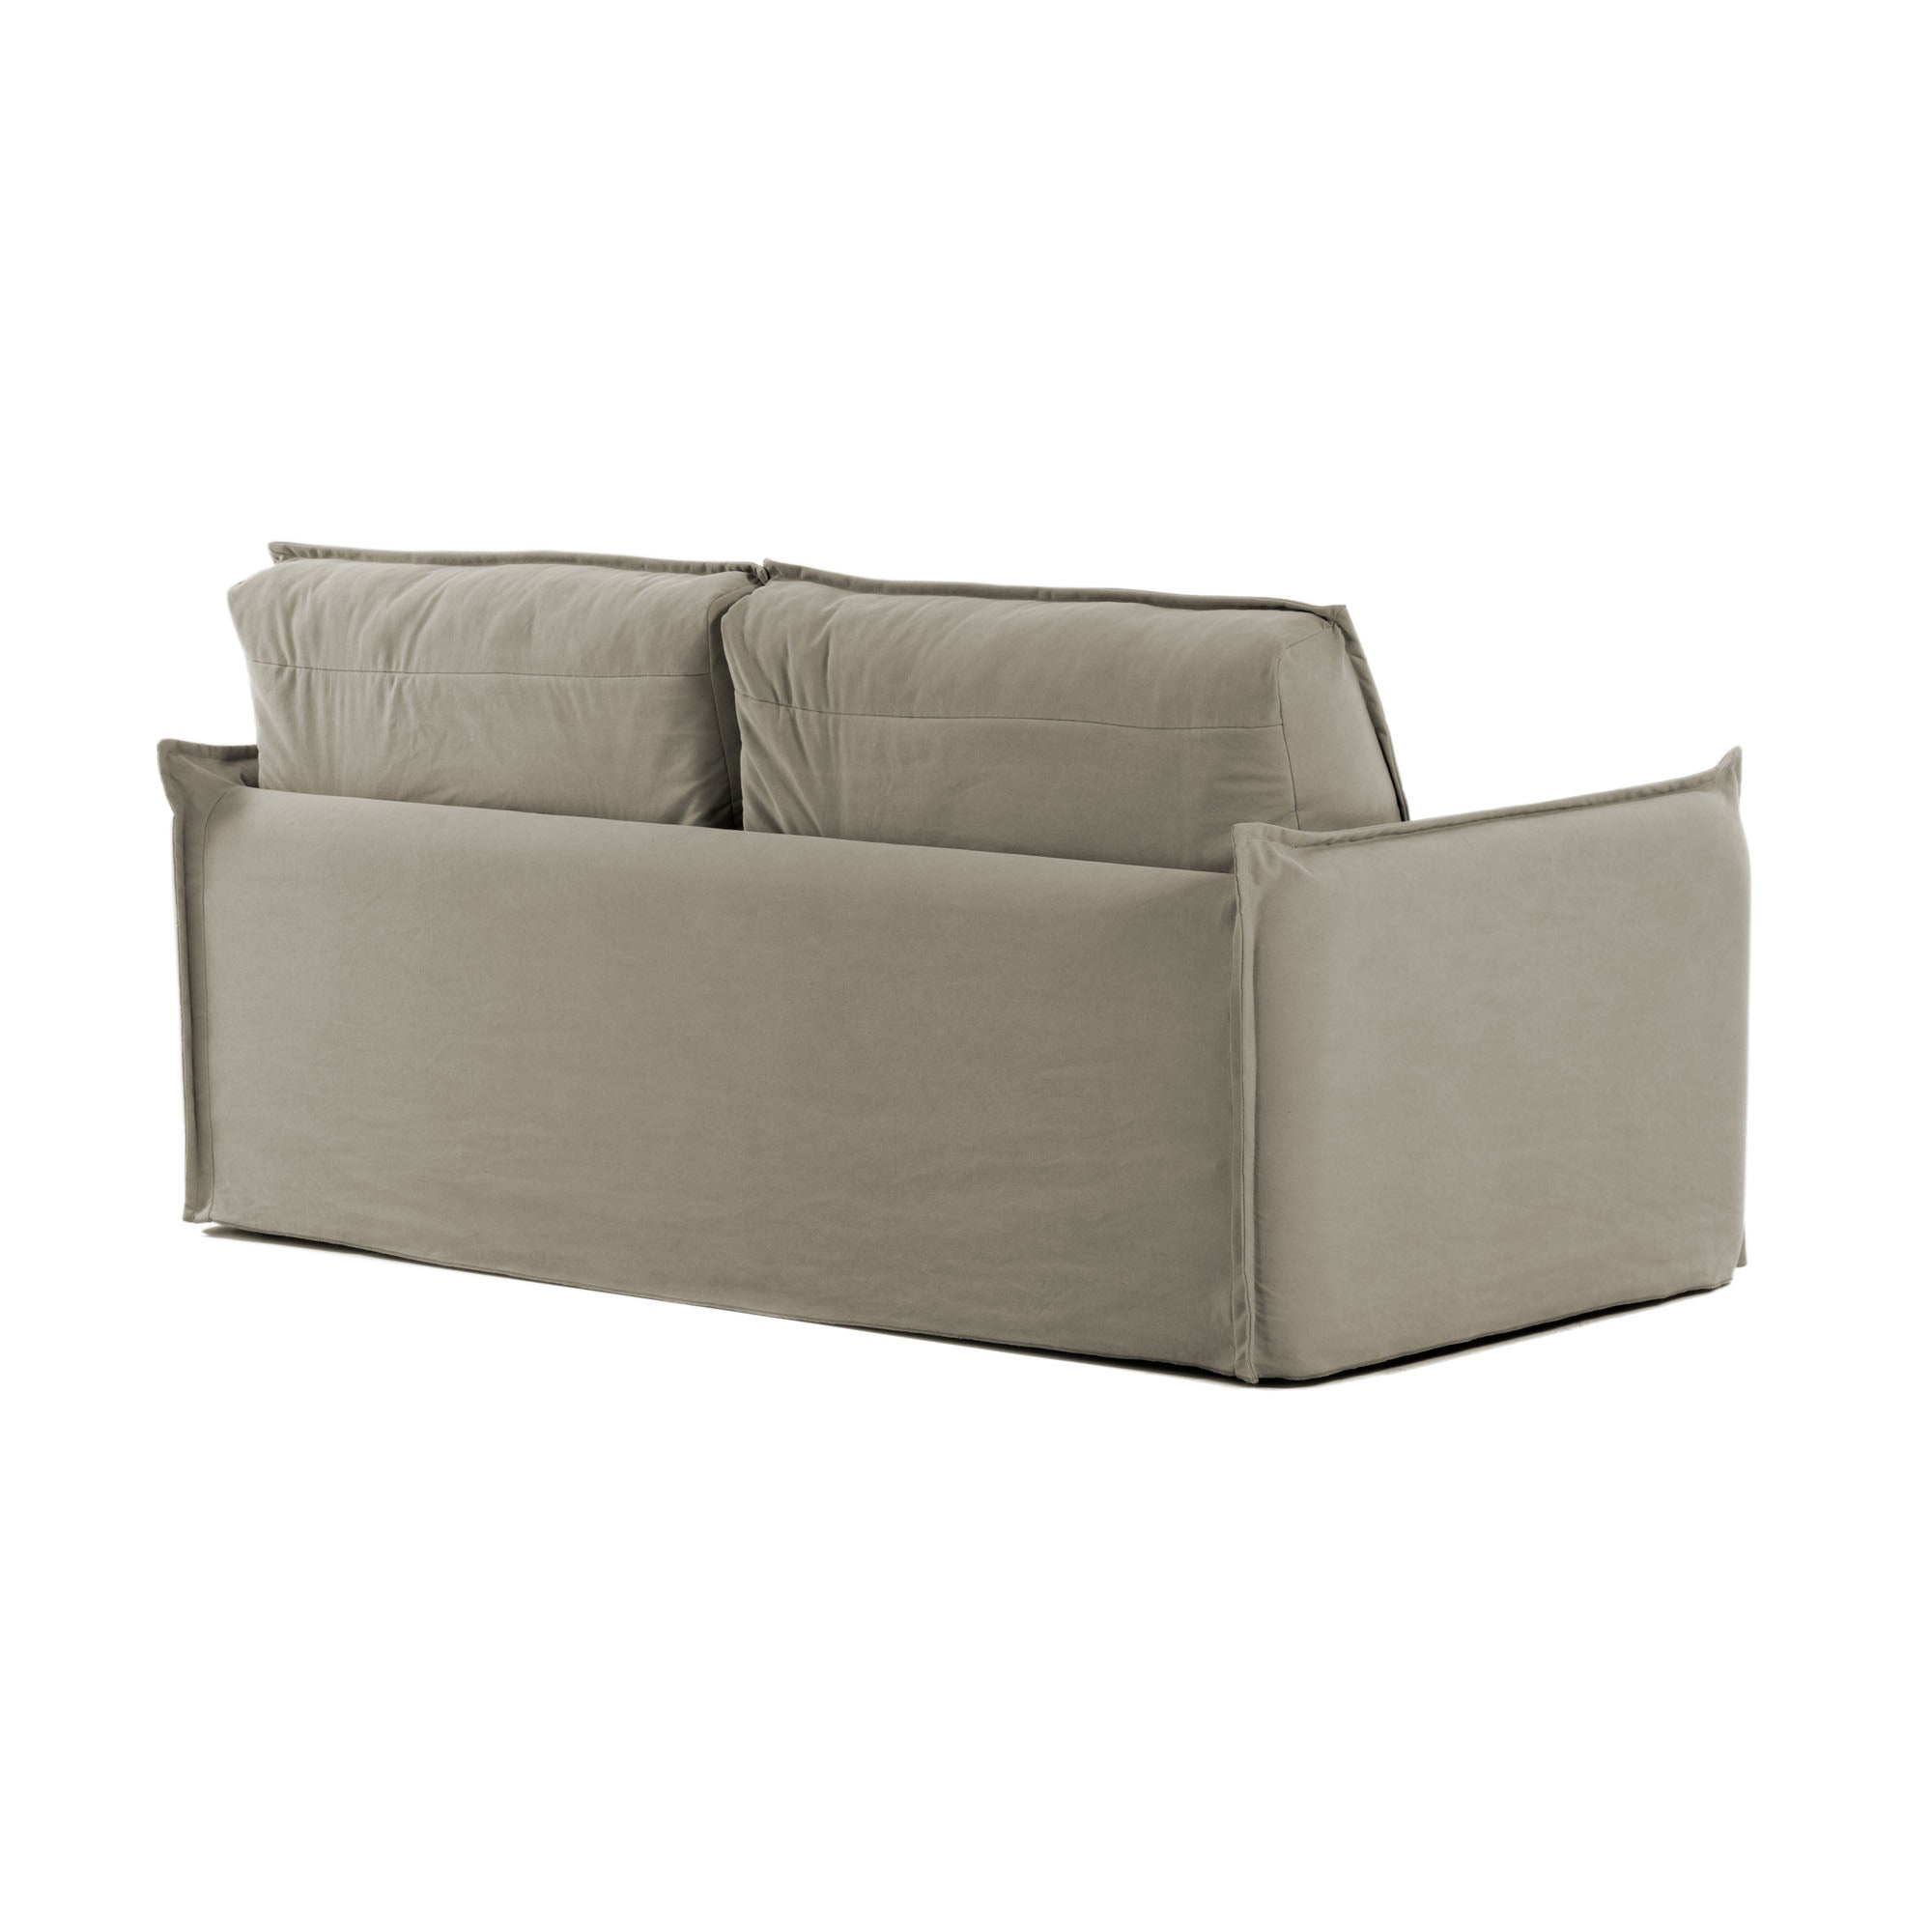 Samsa 2 személyes visco kanapéágy bézs színben, 160cm